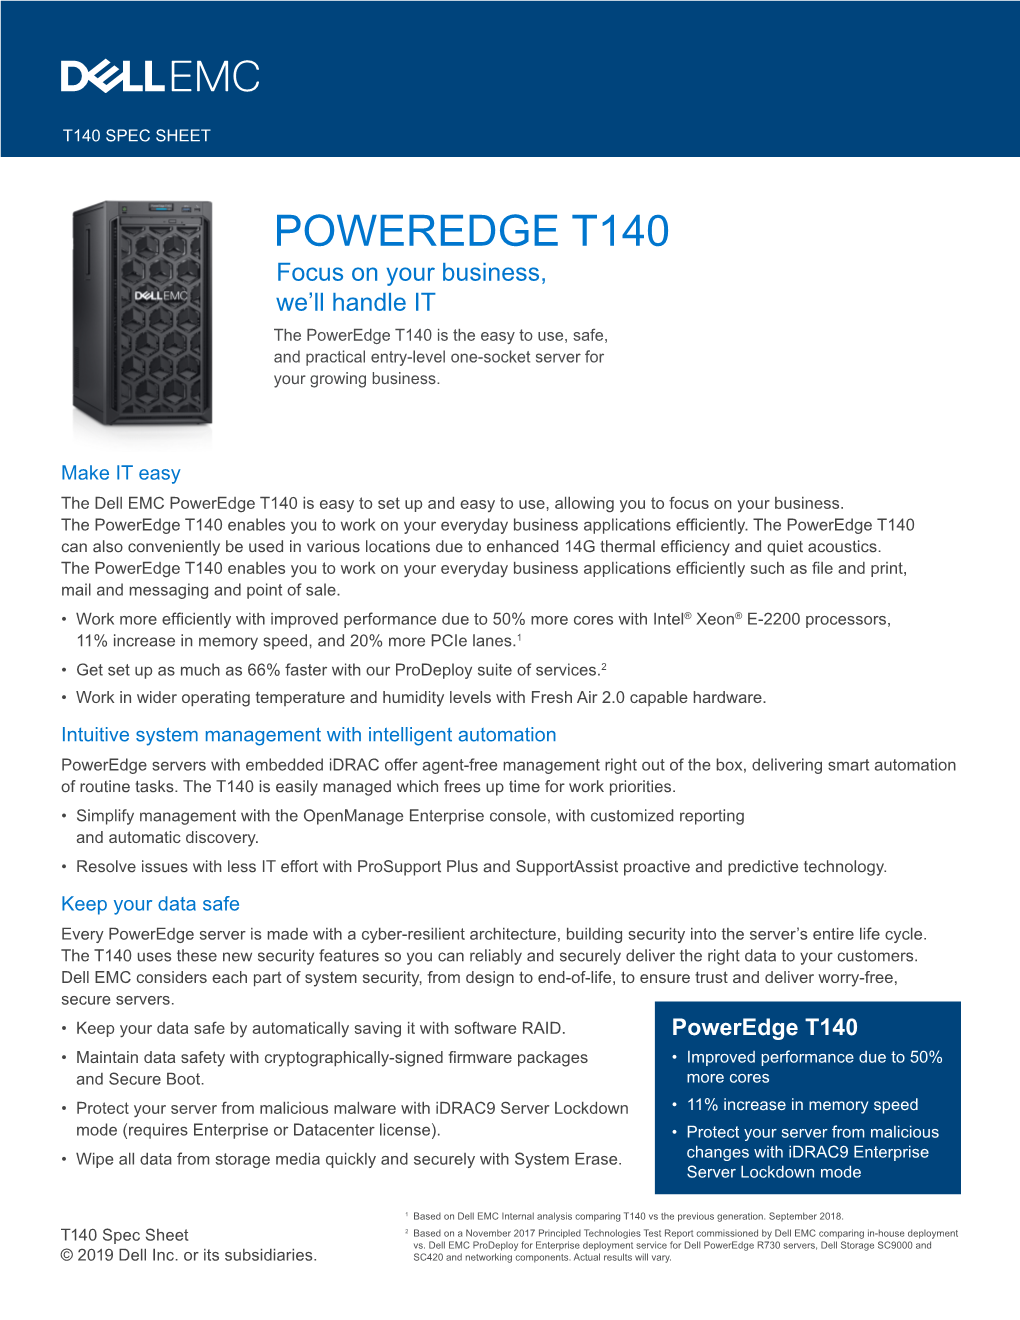 Dell EMC Poweredge T140 Spec Sheet